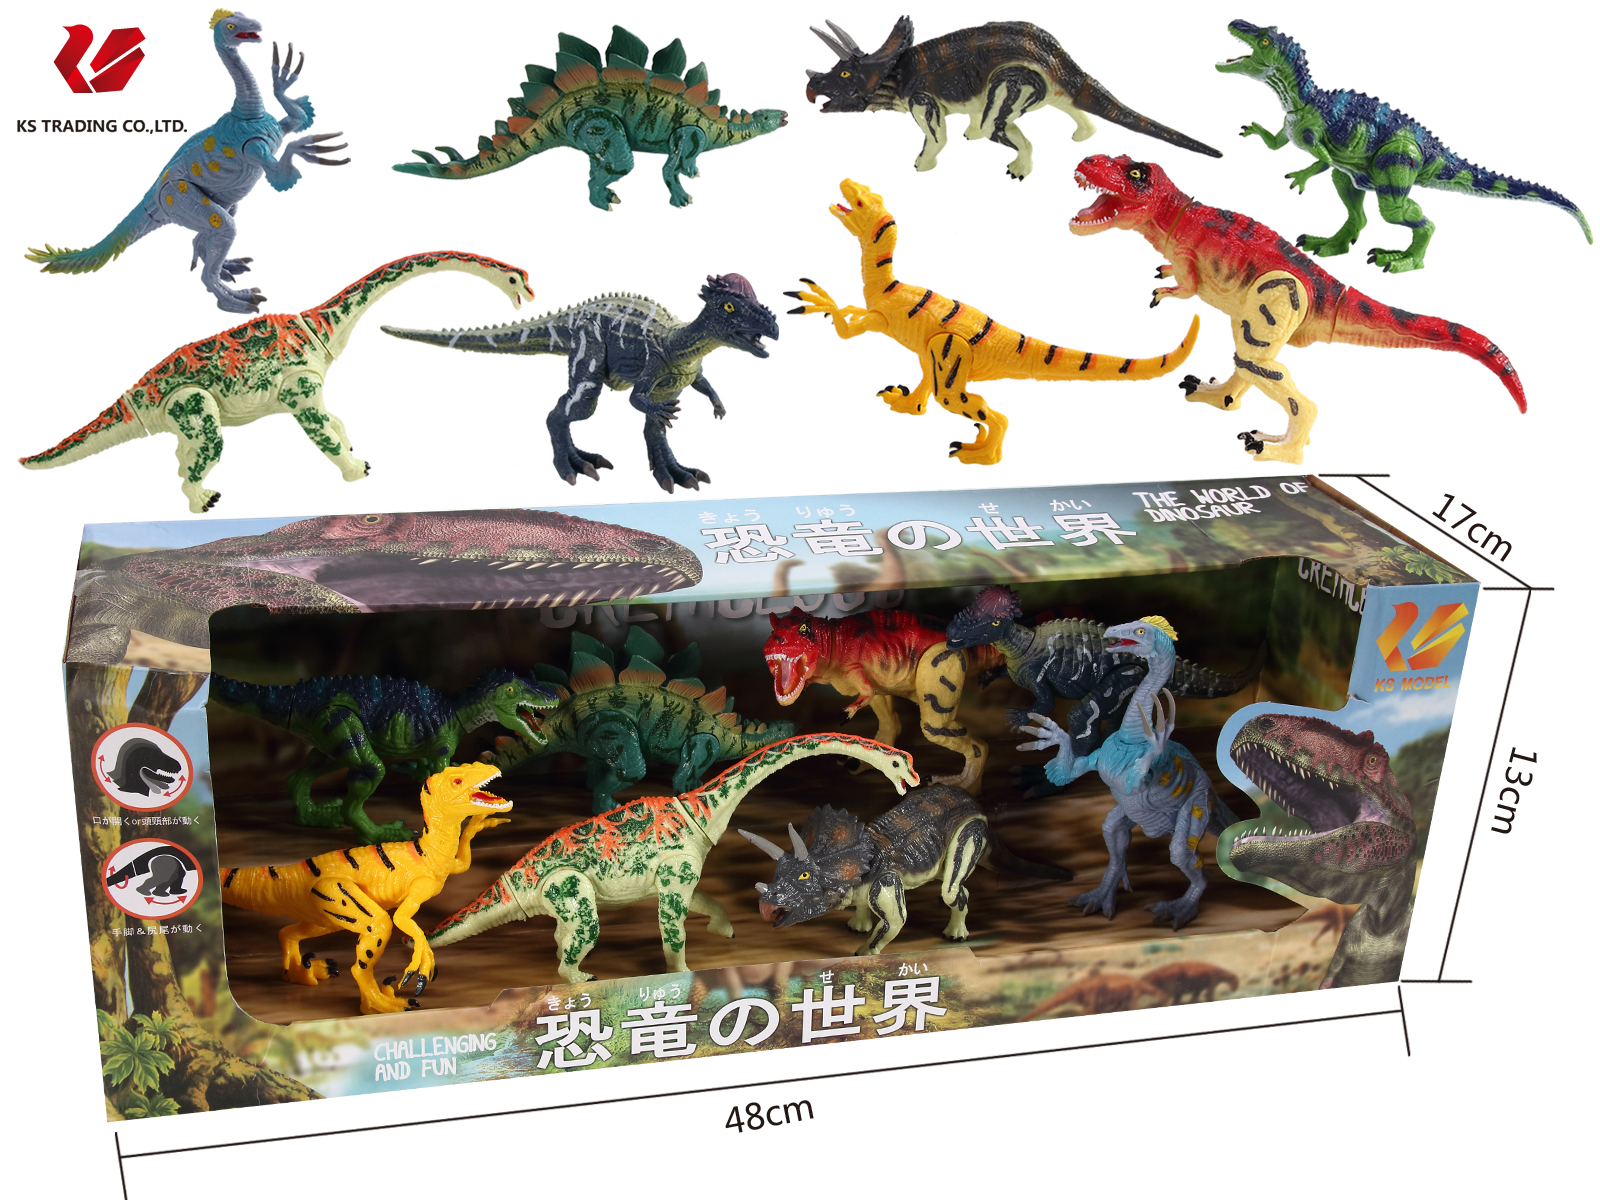 楽天市場 送料無料 子供 キッズ ギフト 恐竜おもちゃ 恐竜 フィギュア Dinosaur Model ダイナソーモデル 本格的なリアルフィギュア フィギア 人形 模型 おもちゃ 玩具 可動できる恐竜おもちゃ 可動できる恐竜フィギュア 恐竜の世界セットb Kobe Store